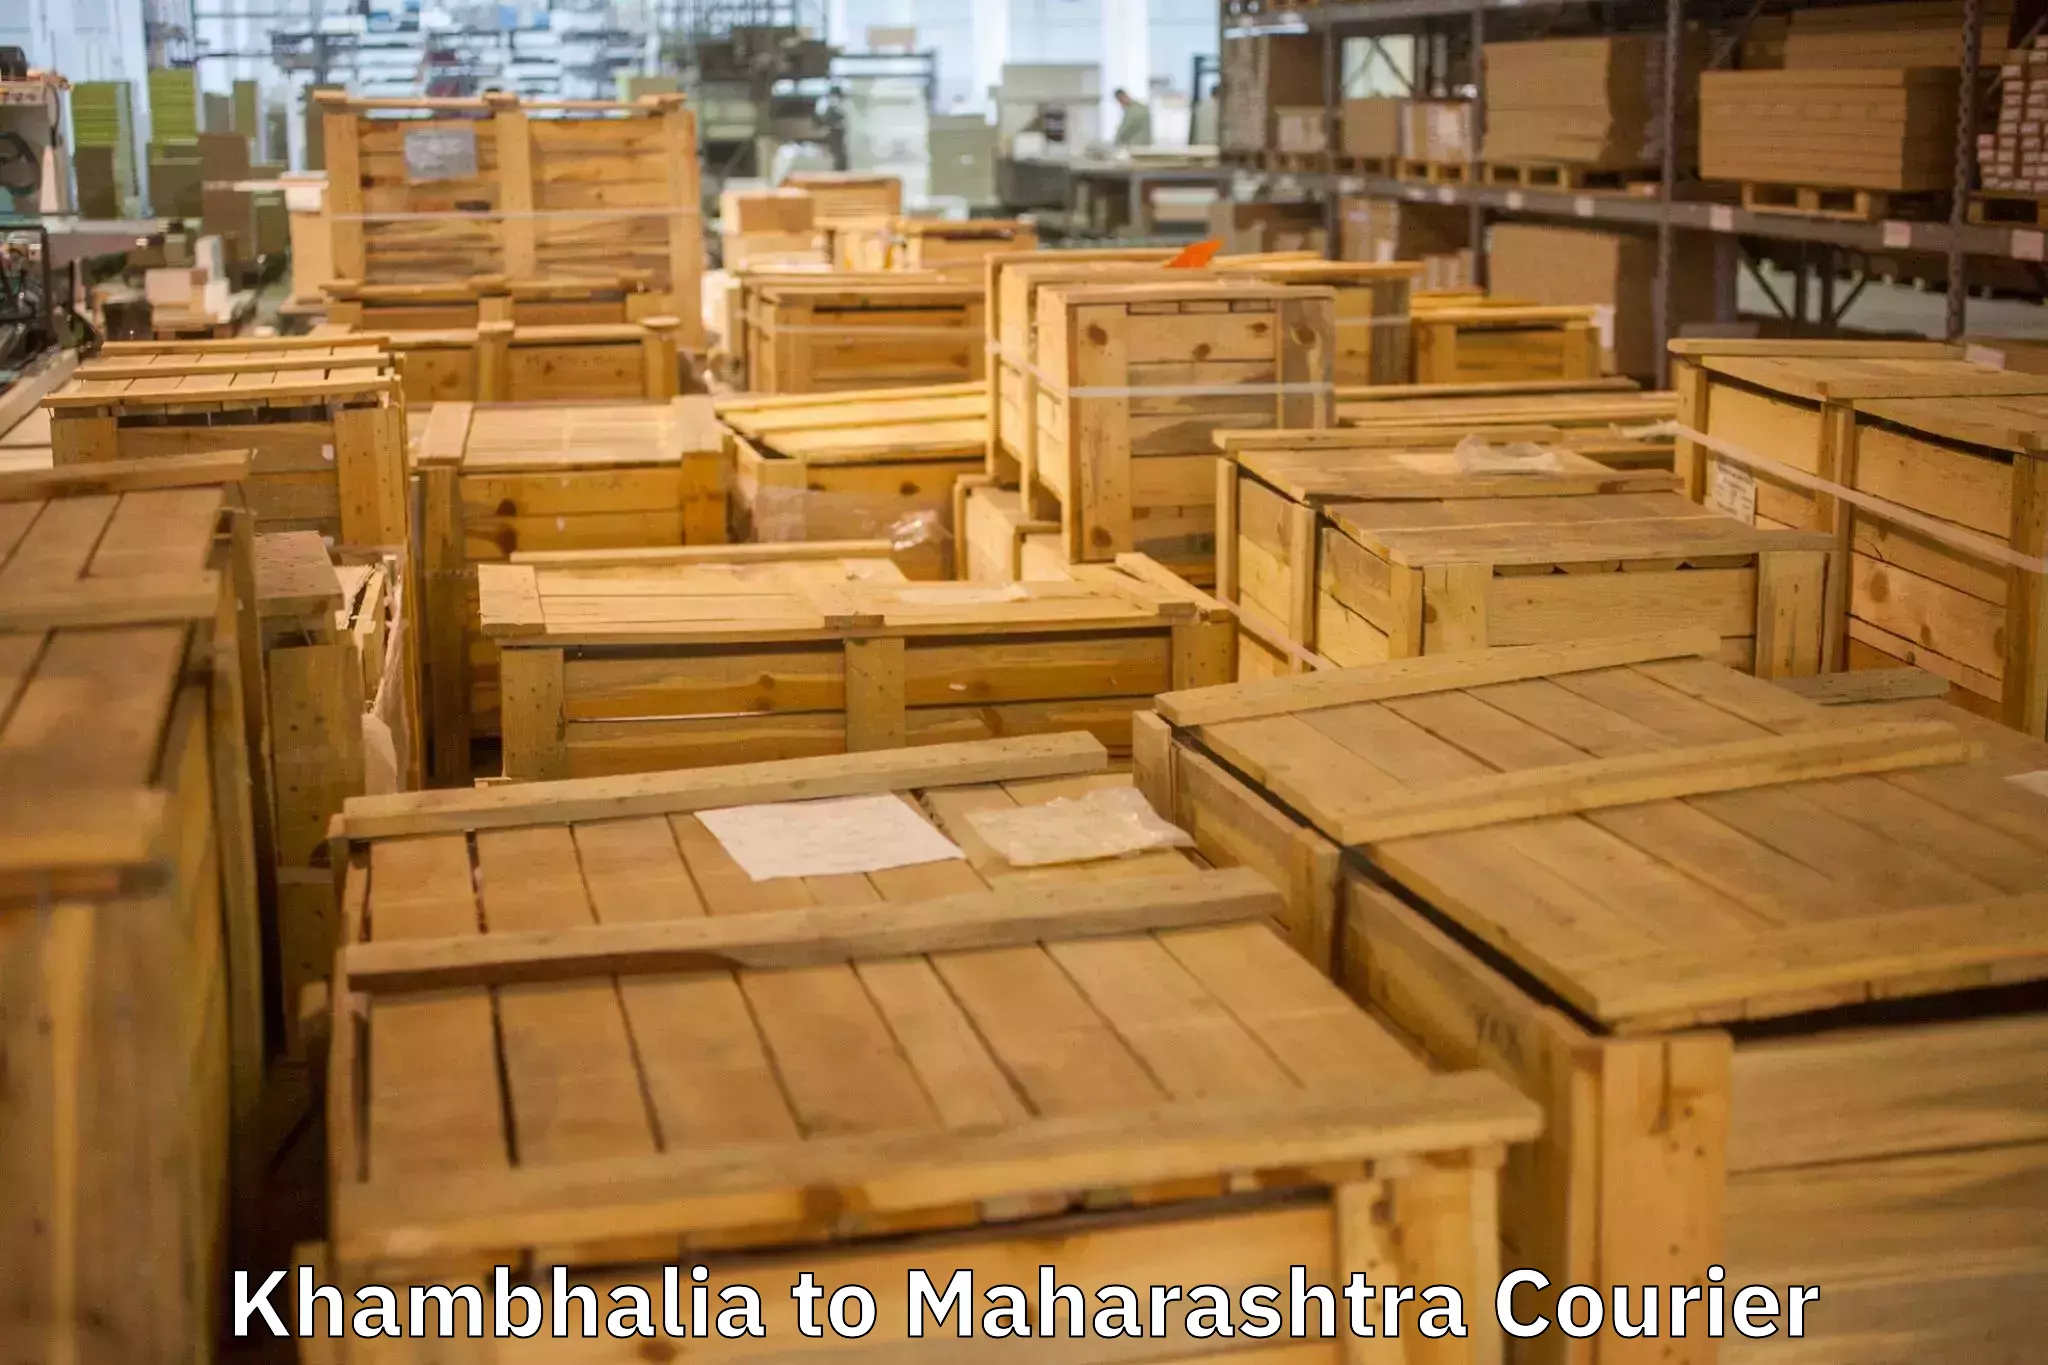 Moving and handling services Khambhalia to Maharashtra